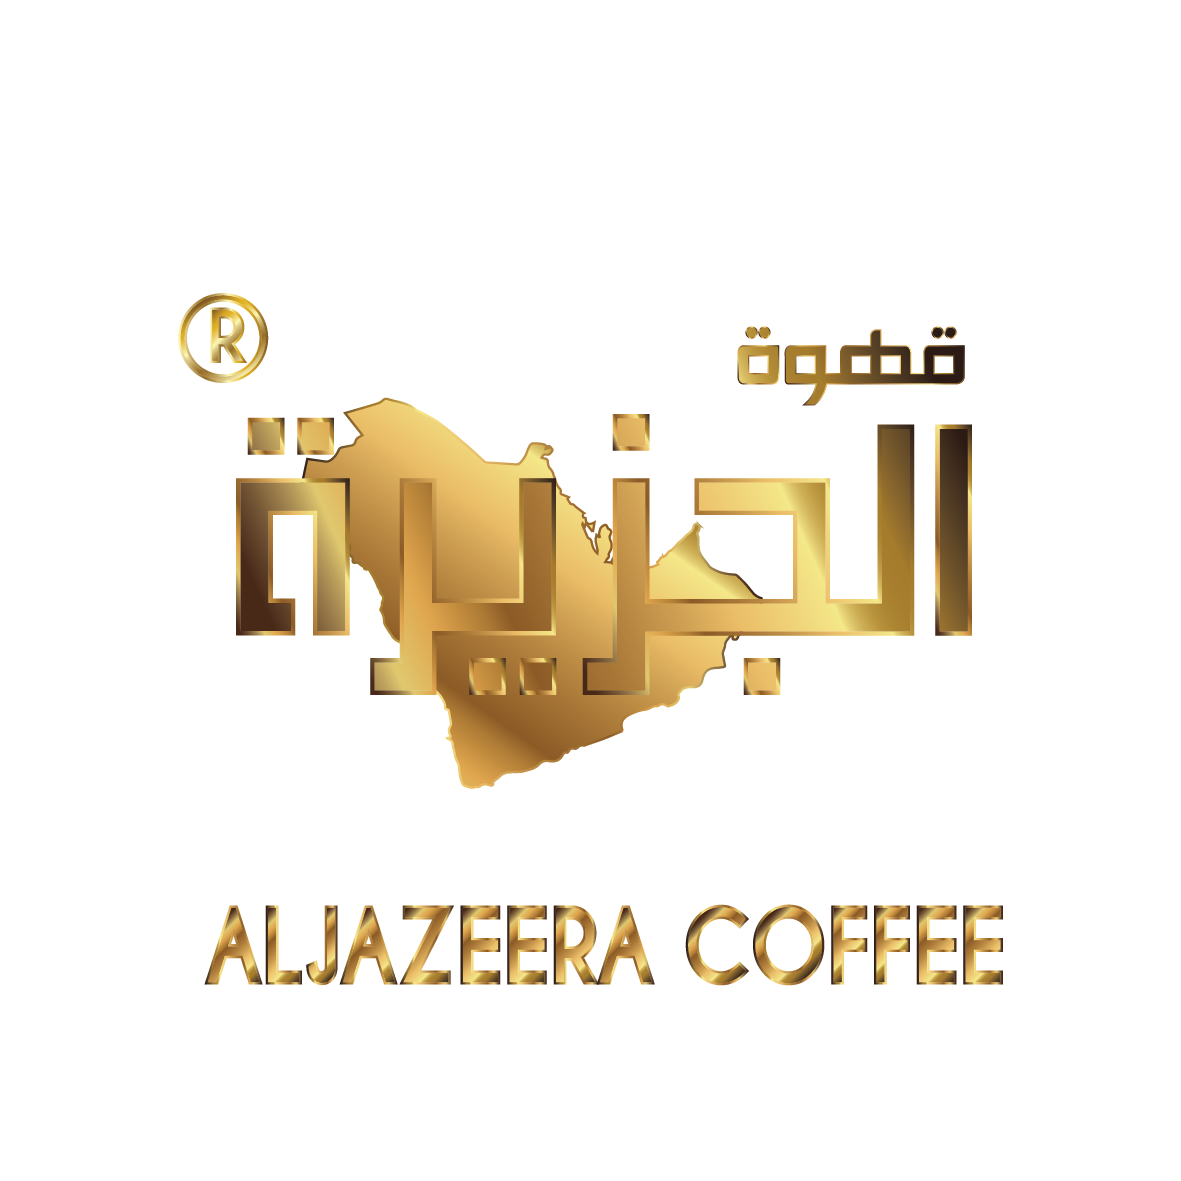 Aljazeera Coffee